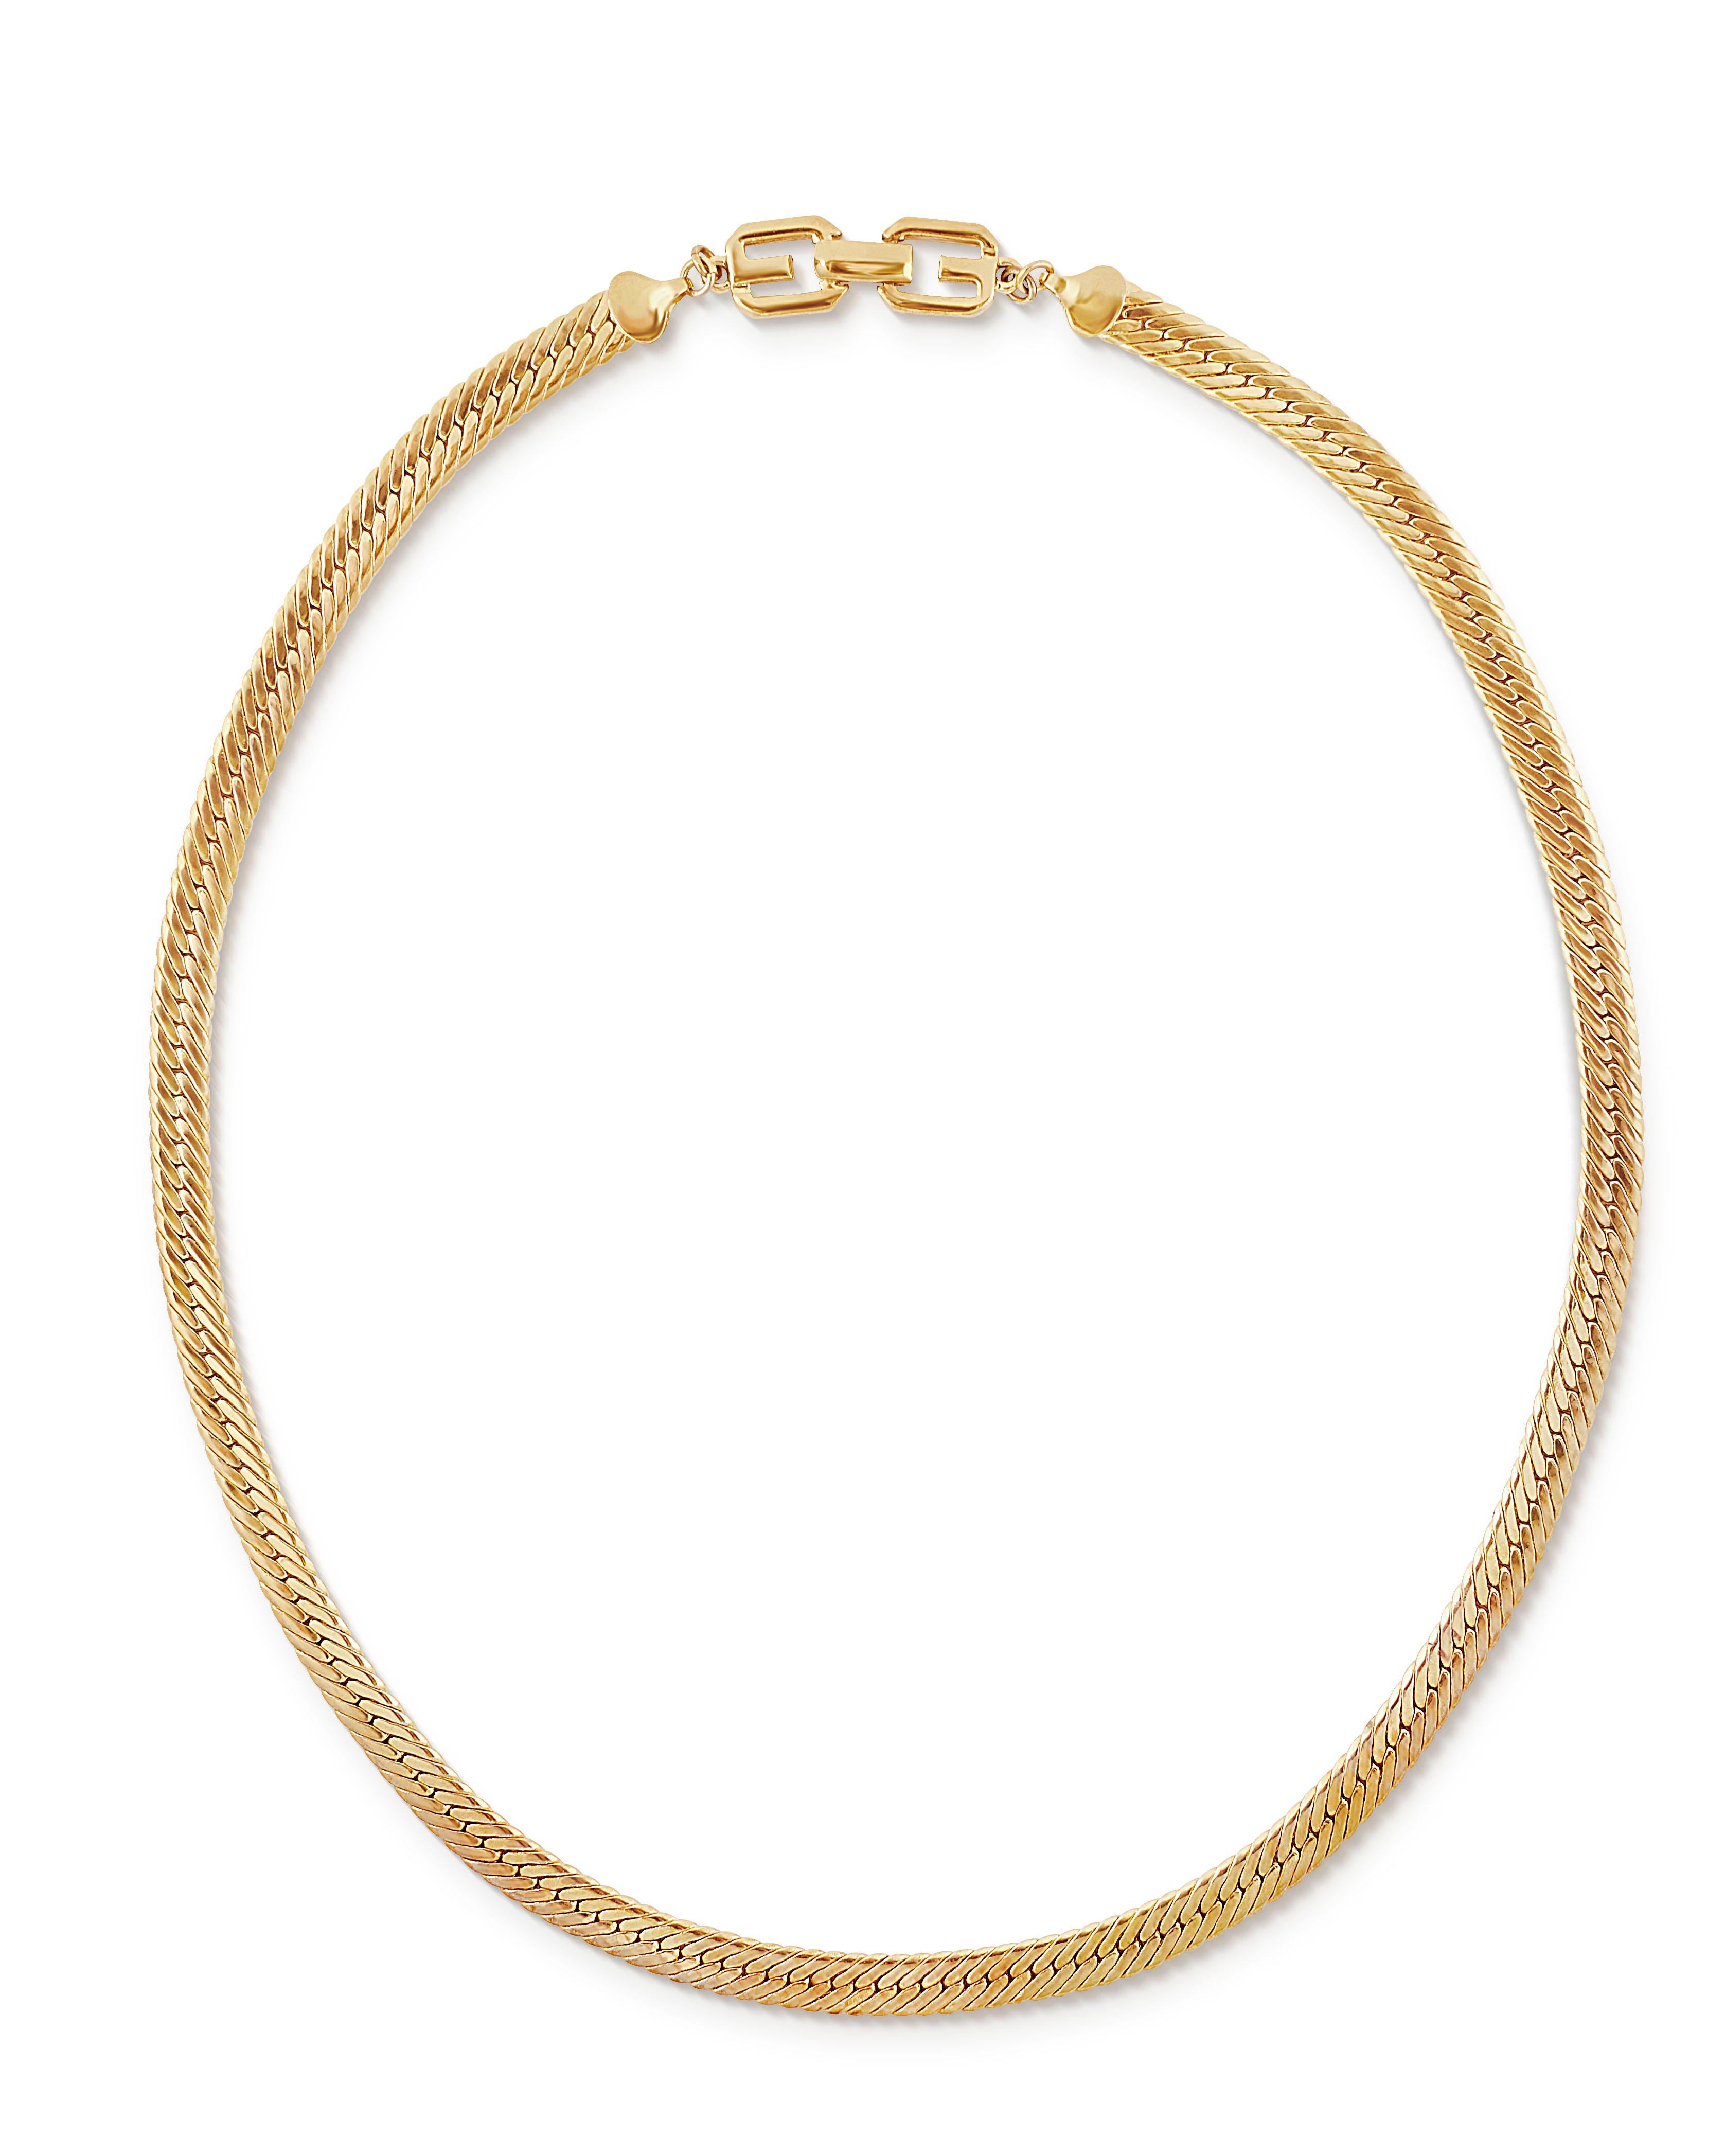 Vintage 1980 Givenchy collier de chaîne à chevrons en plaqué or.  Ce long collier héritage se compose d'une chaîne plate et large à chevrons et d'un fermoir à logo double G.  Longueur 26 pouces, largeur un peu plus de 1/4 de pouce avec une fermeture